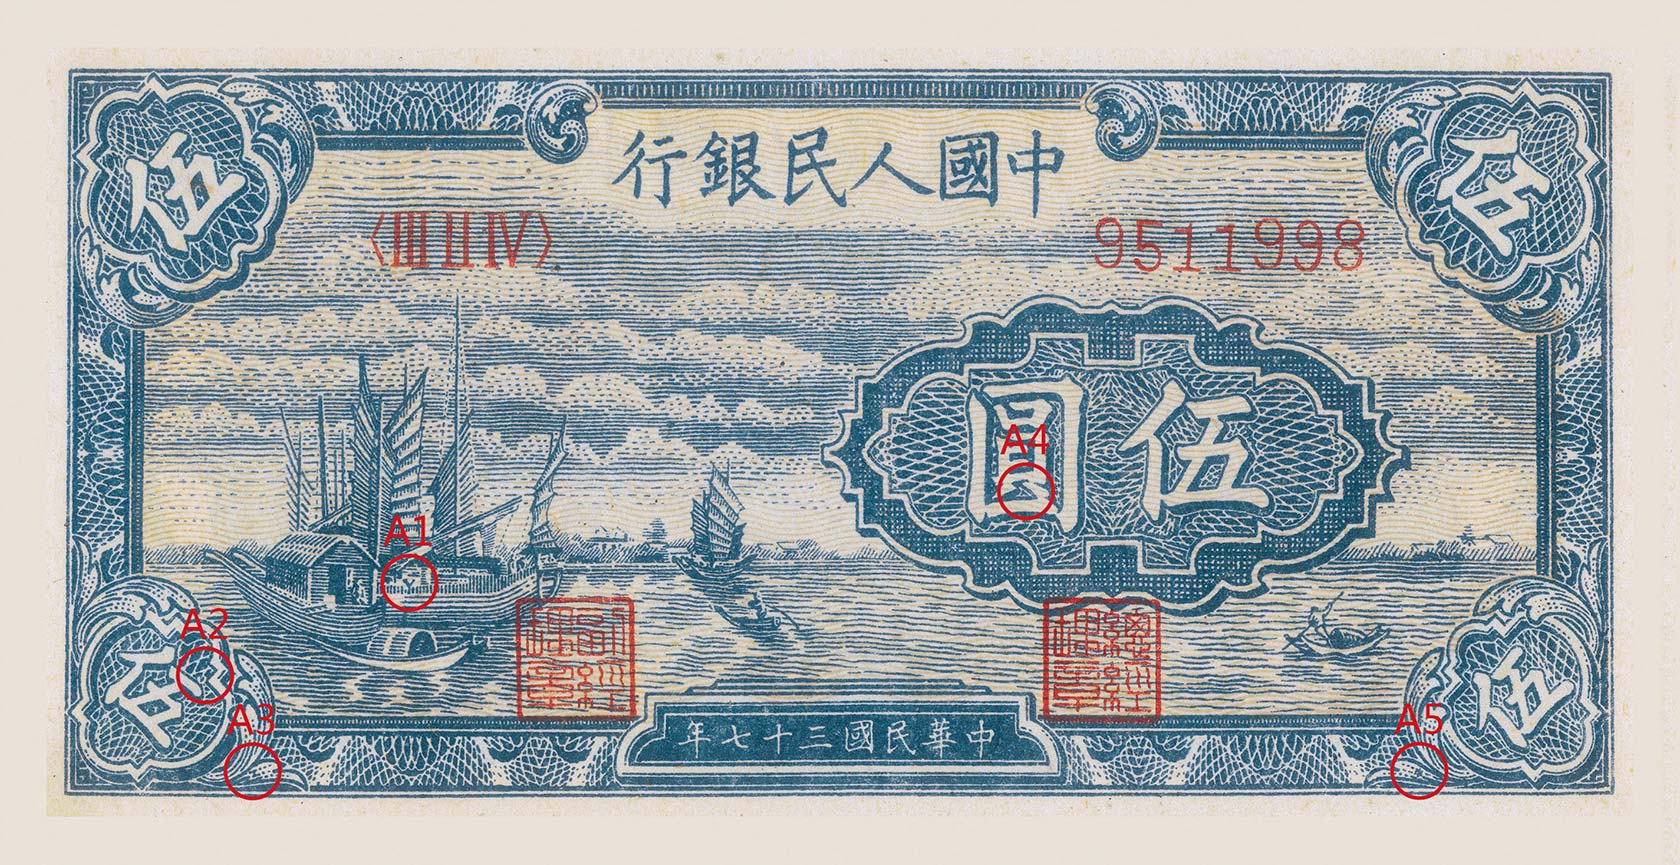 旧版五十元人民币图片-图库-五毛网